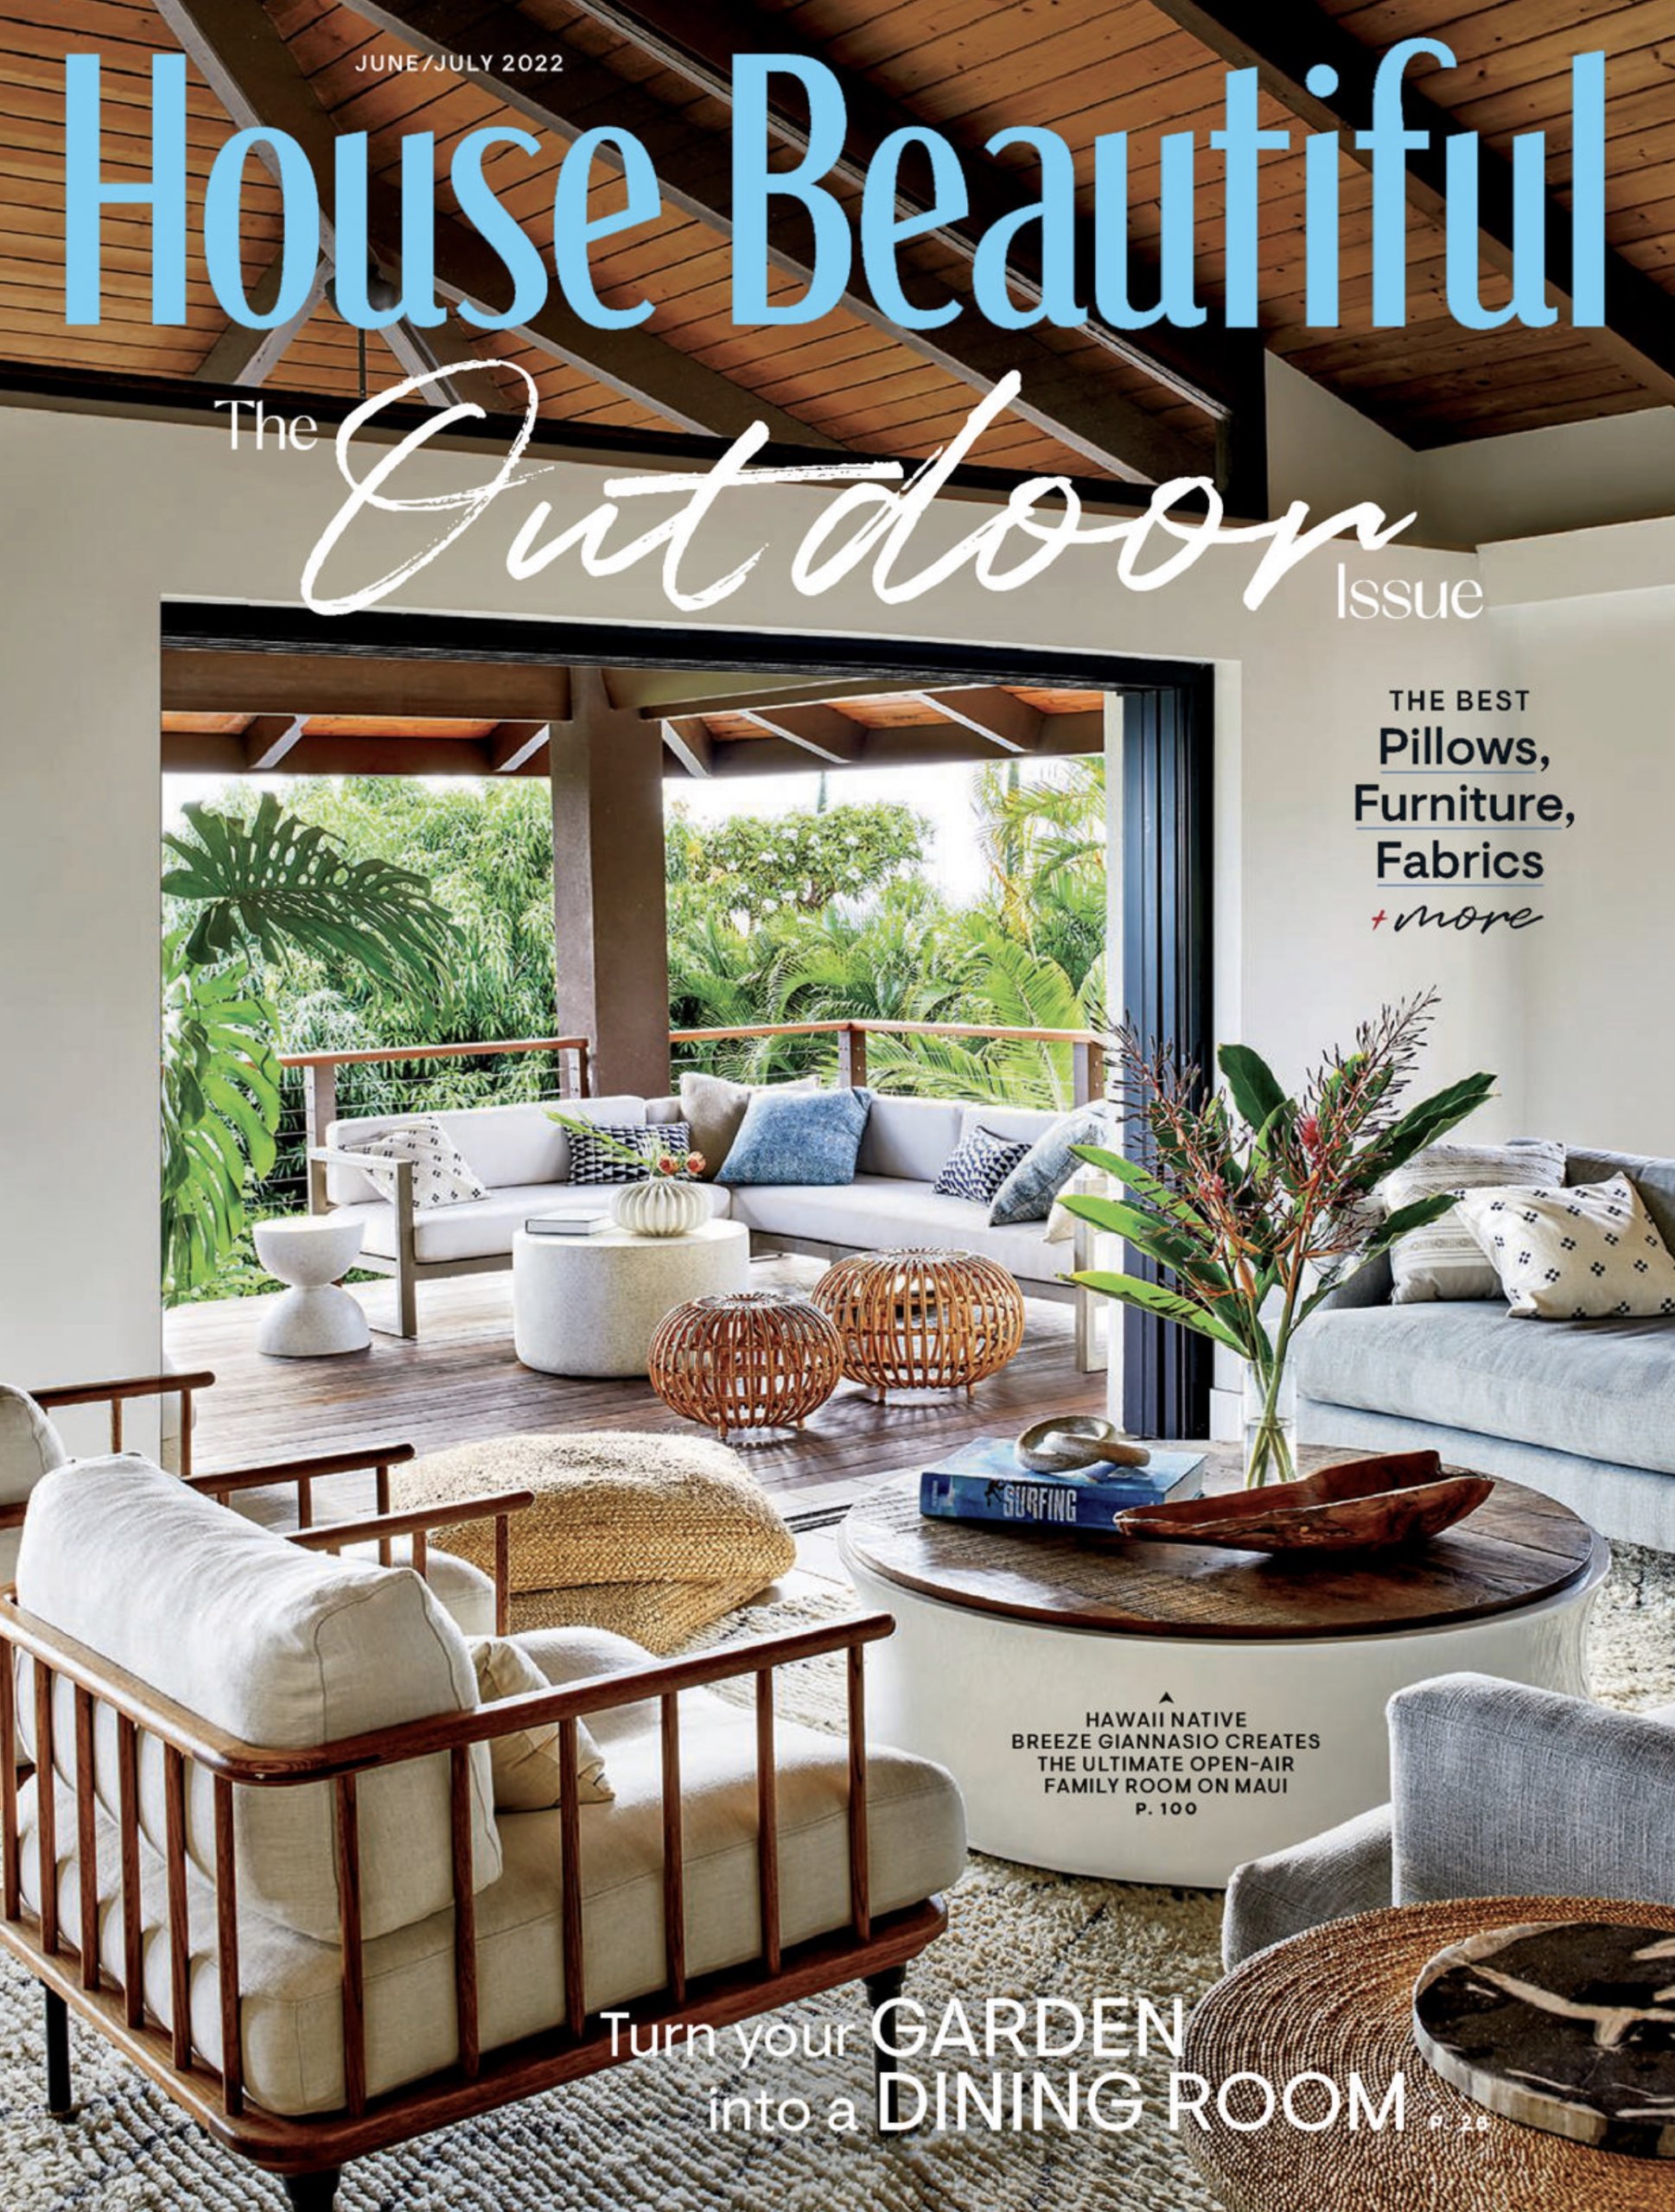 House Beautiful magazine Image